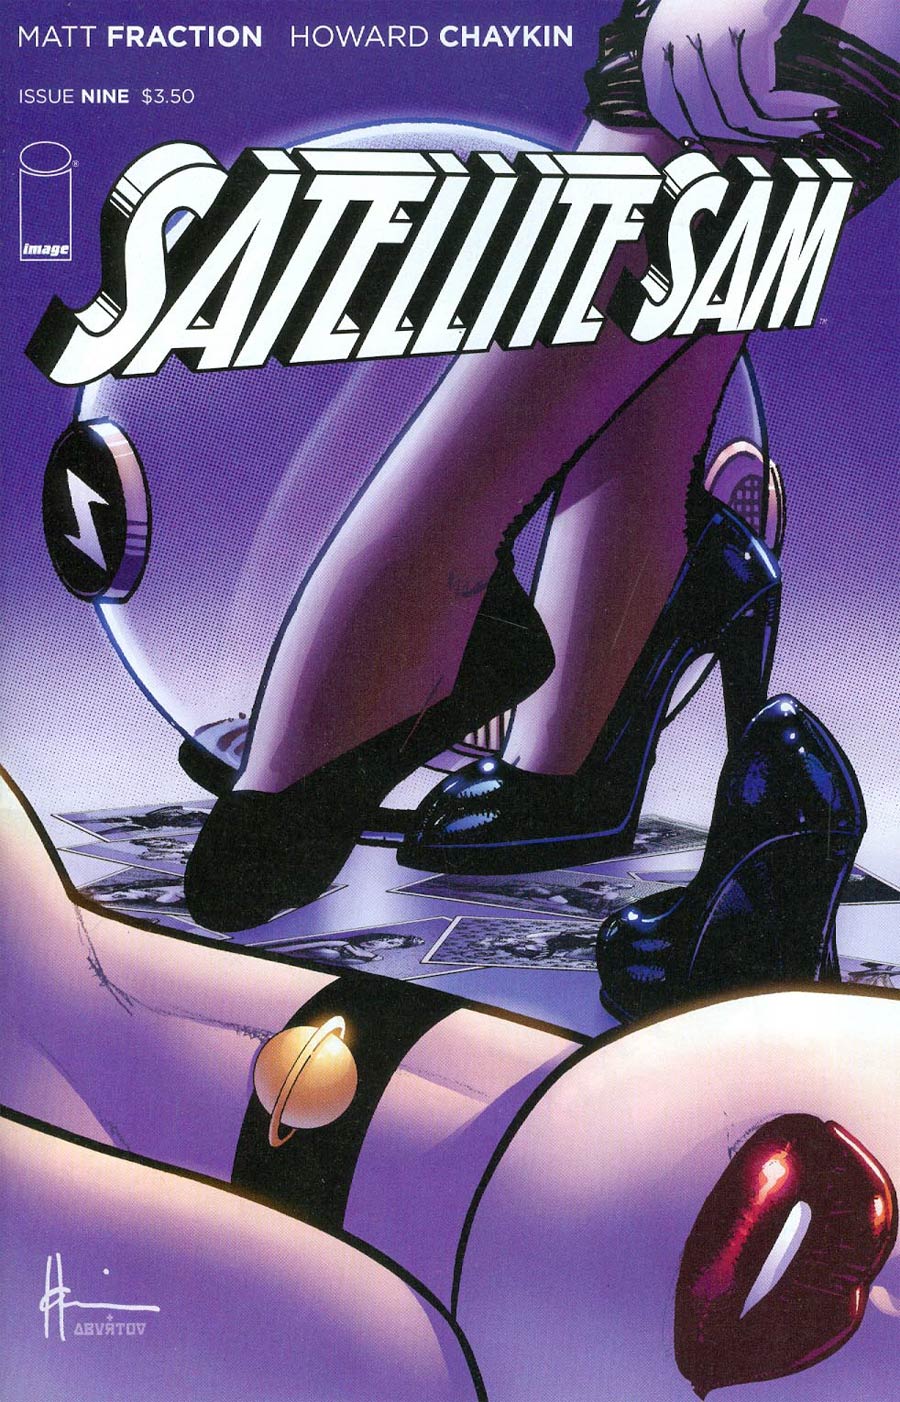 Satellite Sam #9